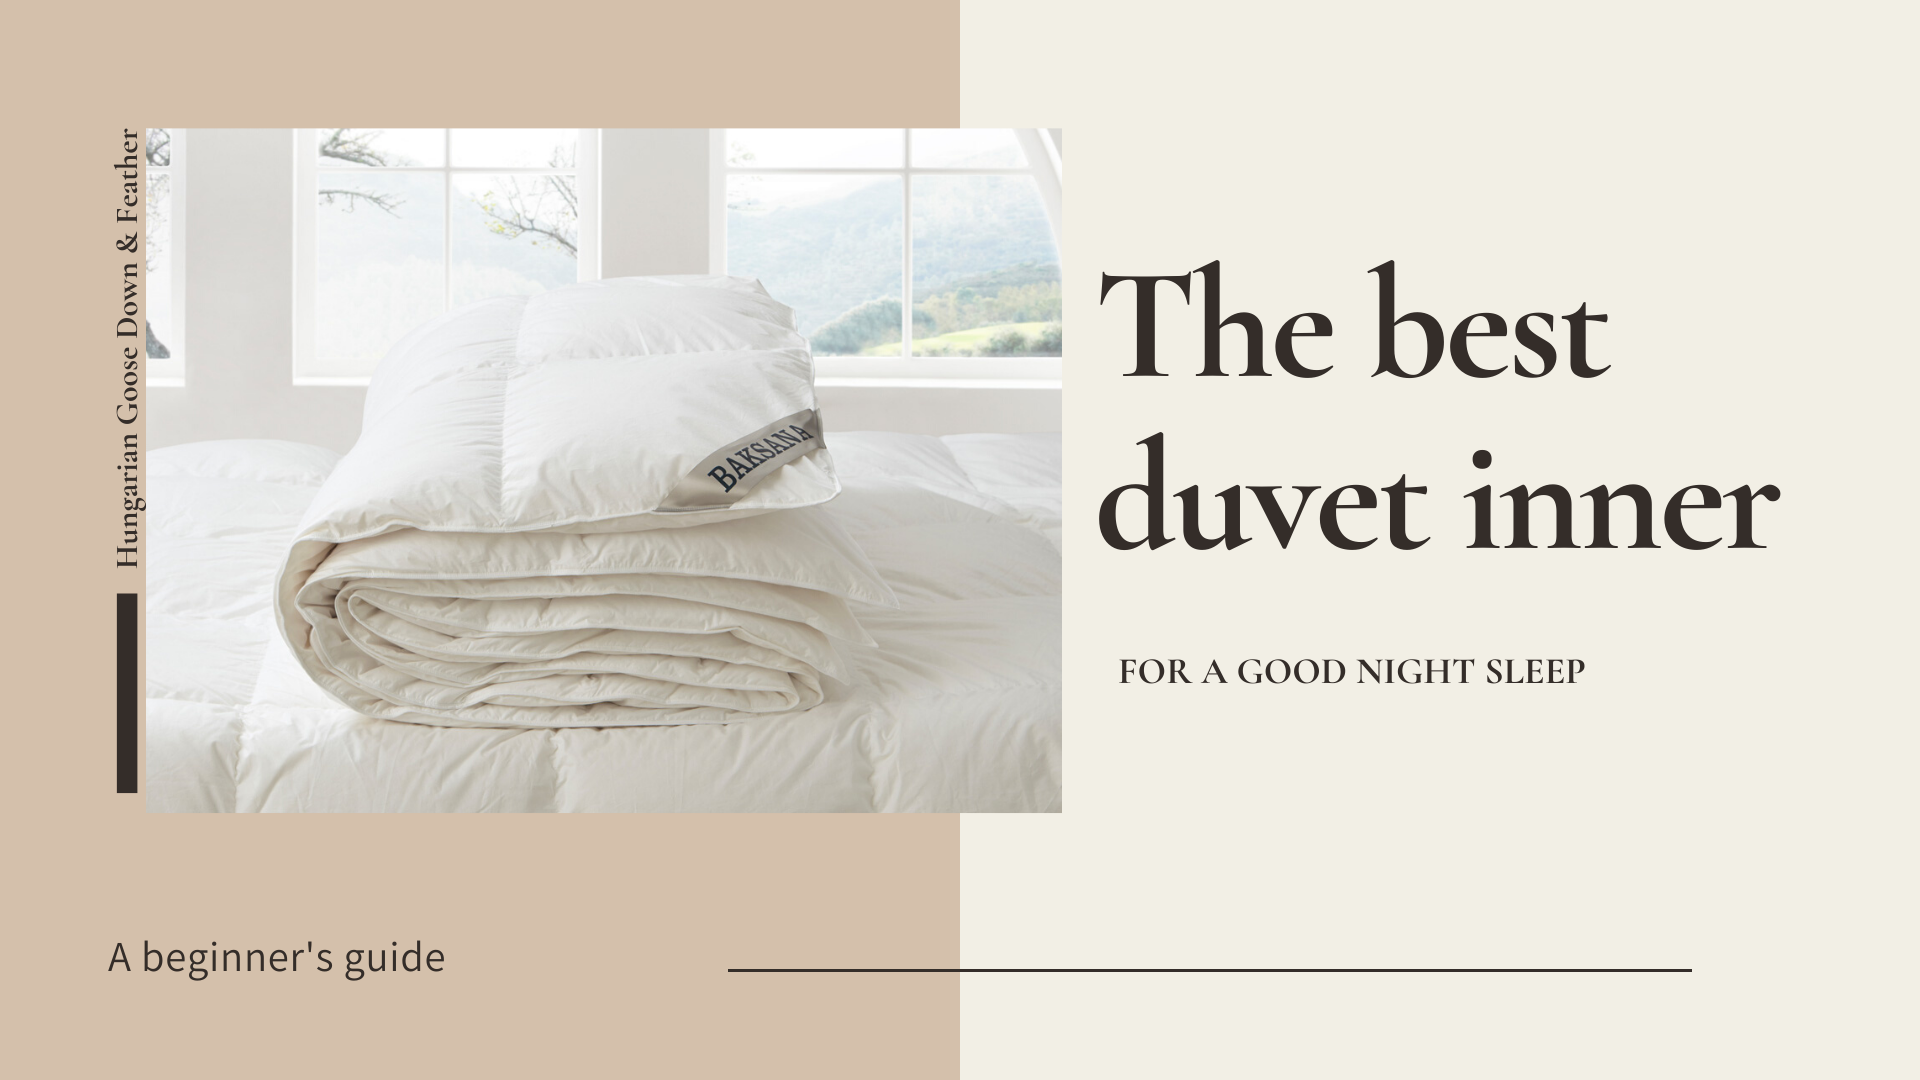 The Best Duvet Inner for a Good Night Sleep